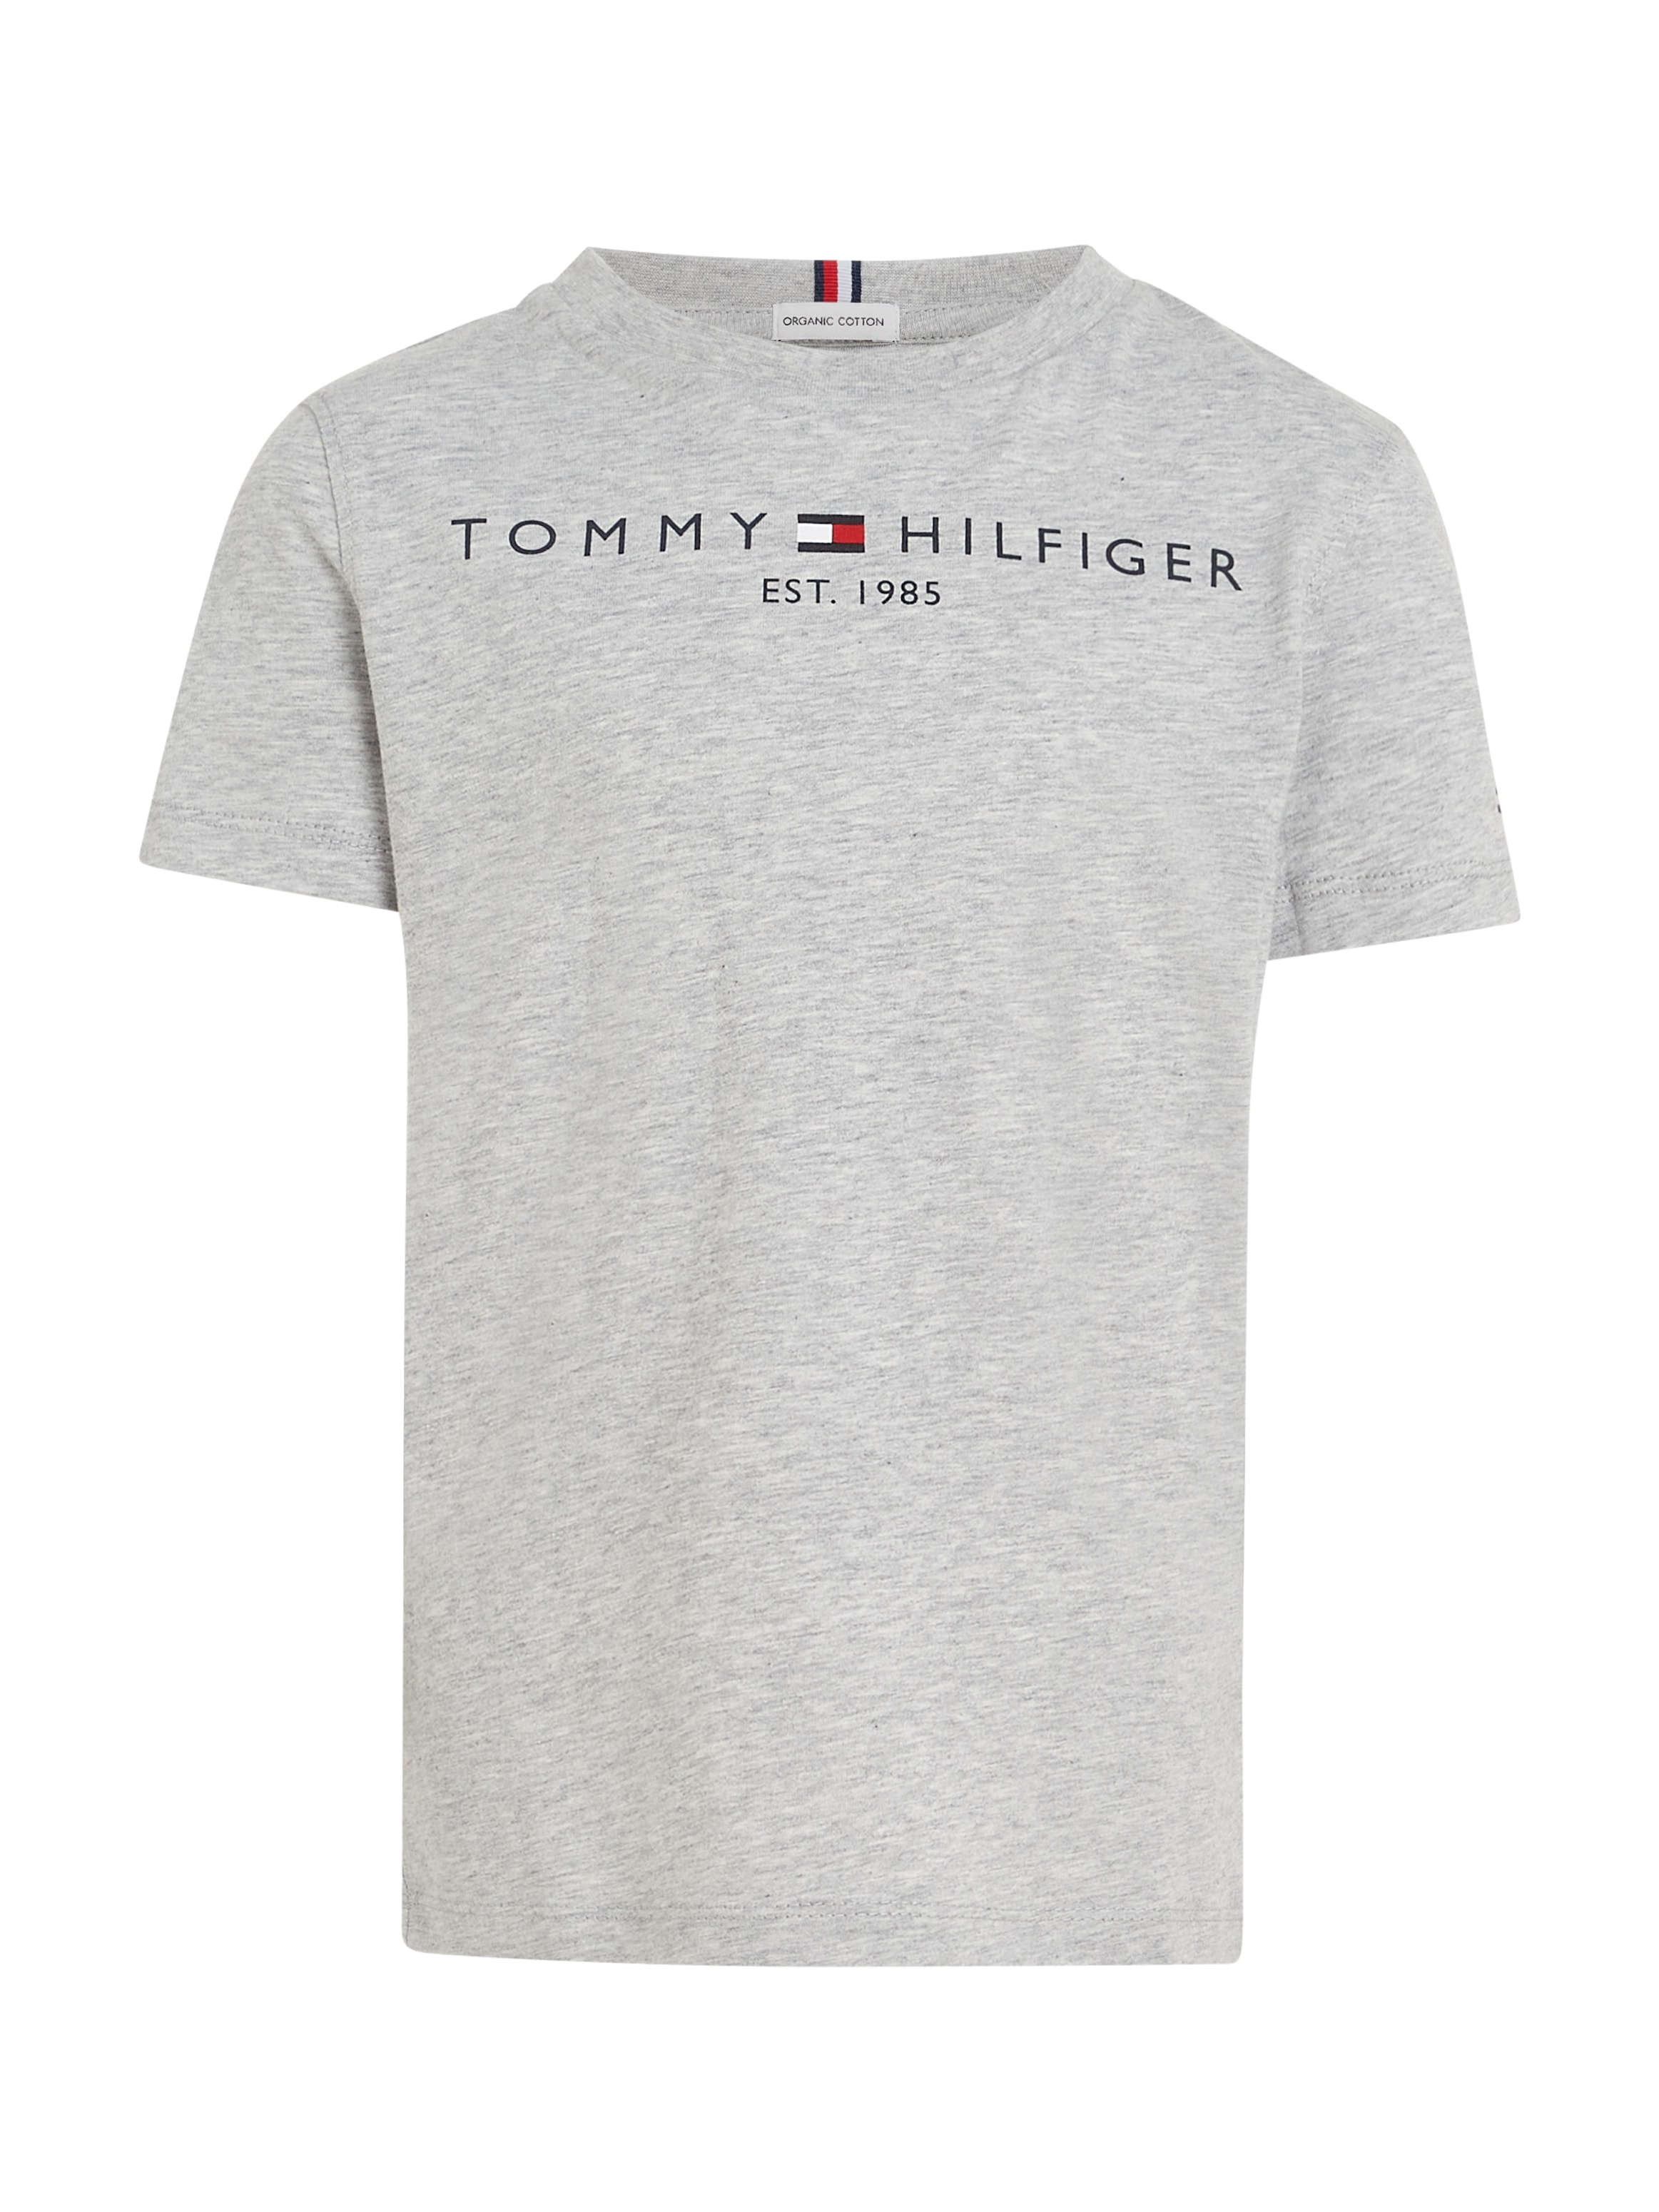 Tommy Hilfiger T-Shirt »ESSENTIAL Junior Kinder Kids bestellen TEE«, Mädchen Jungen MiniMe,für und online